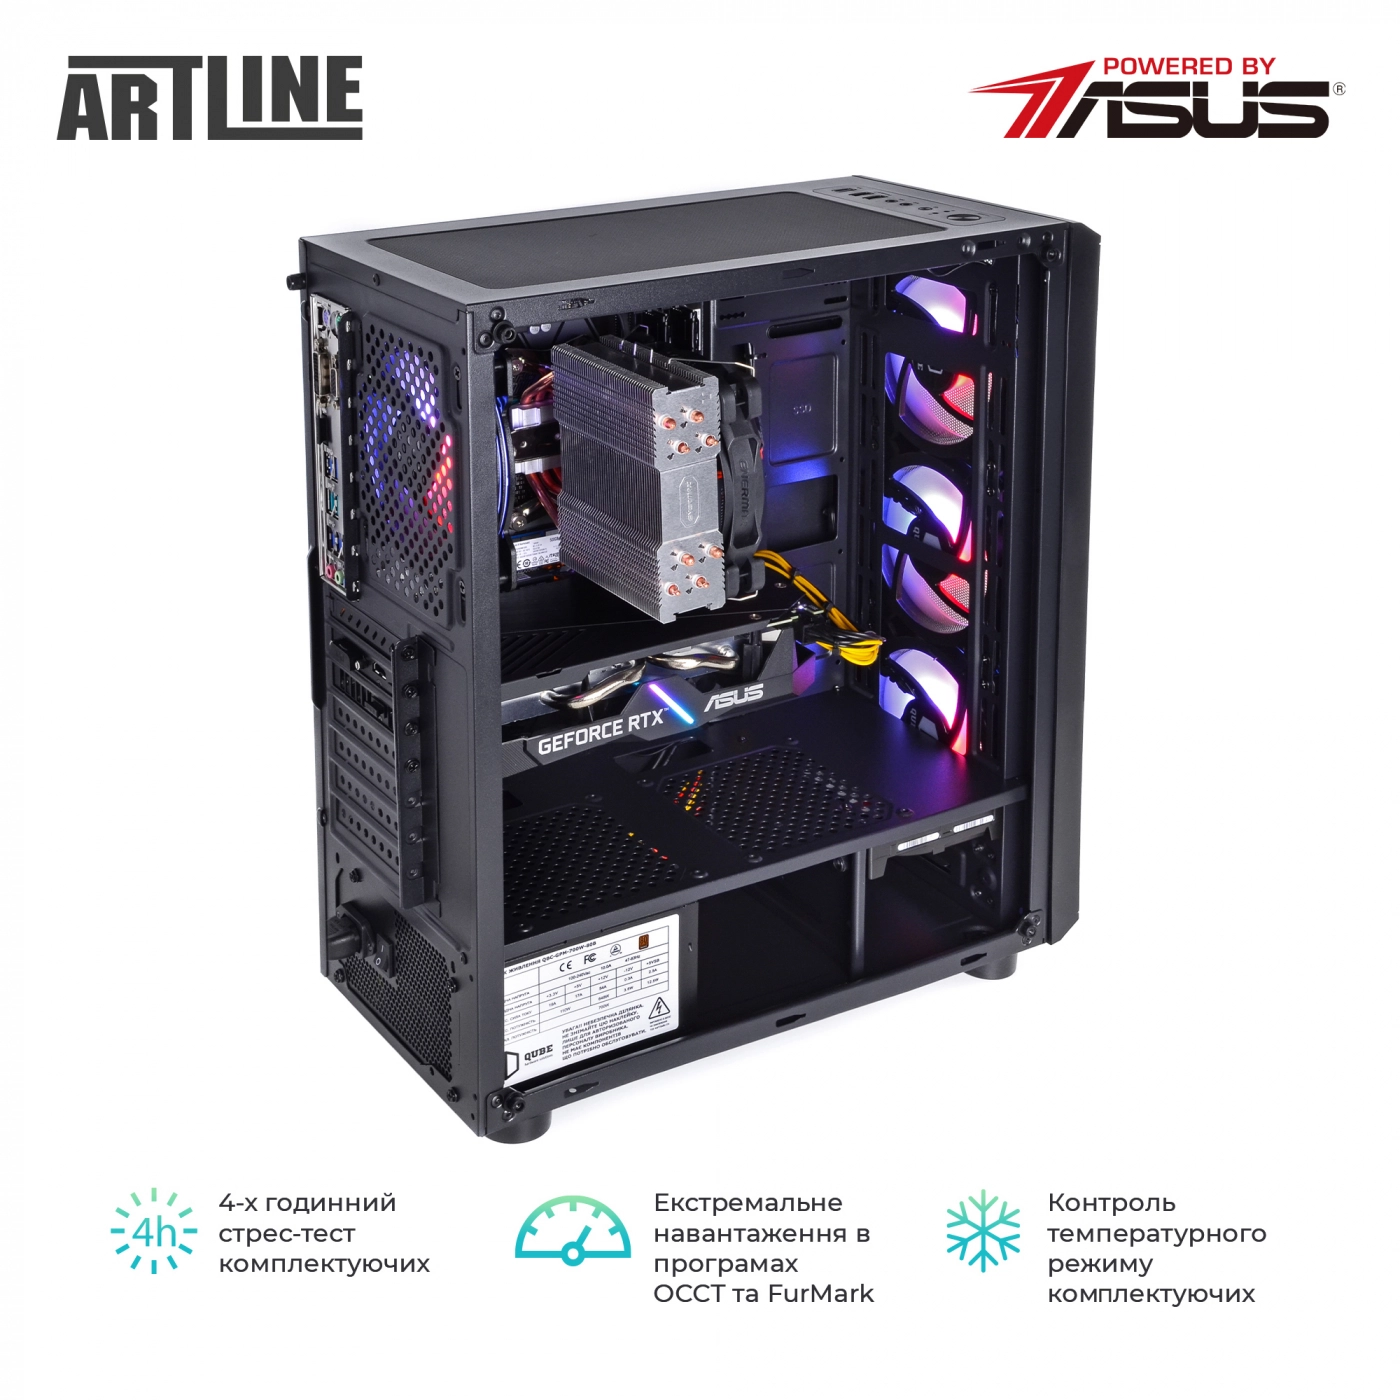 Купить Компьютер ARTLINE Gaming X58v05 - фото 8